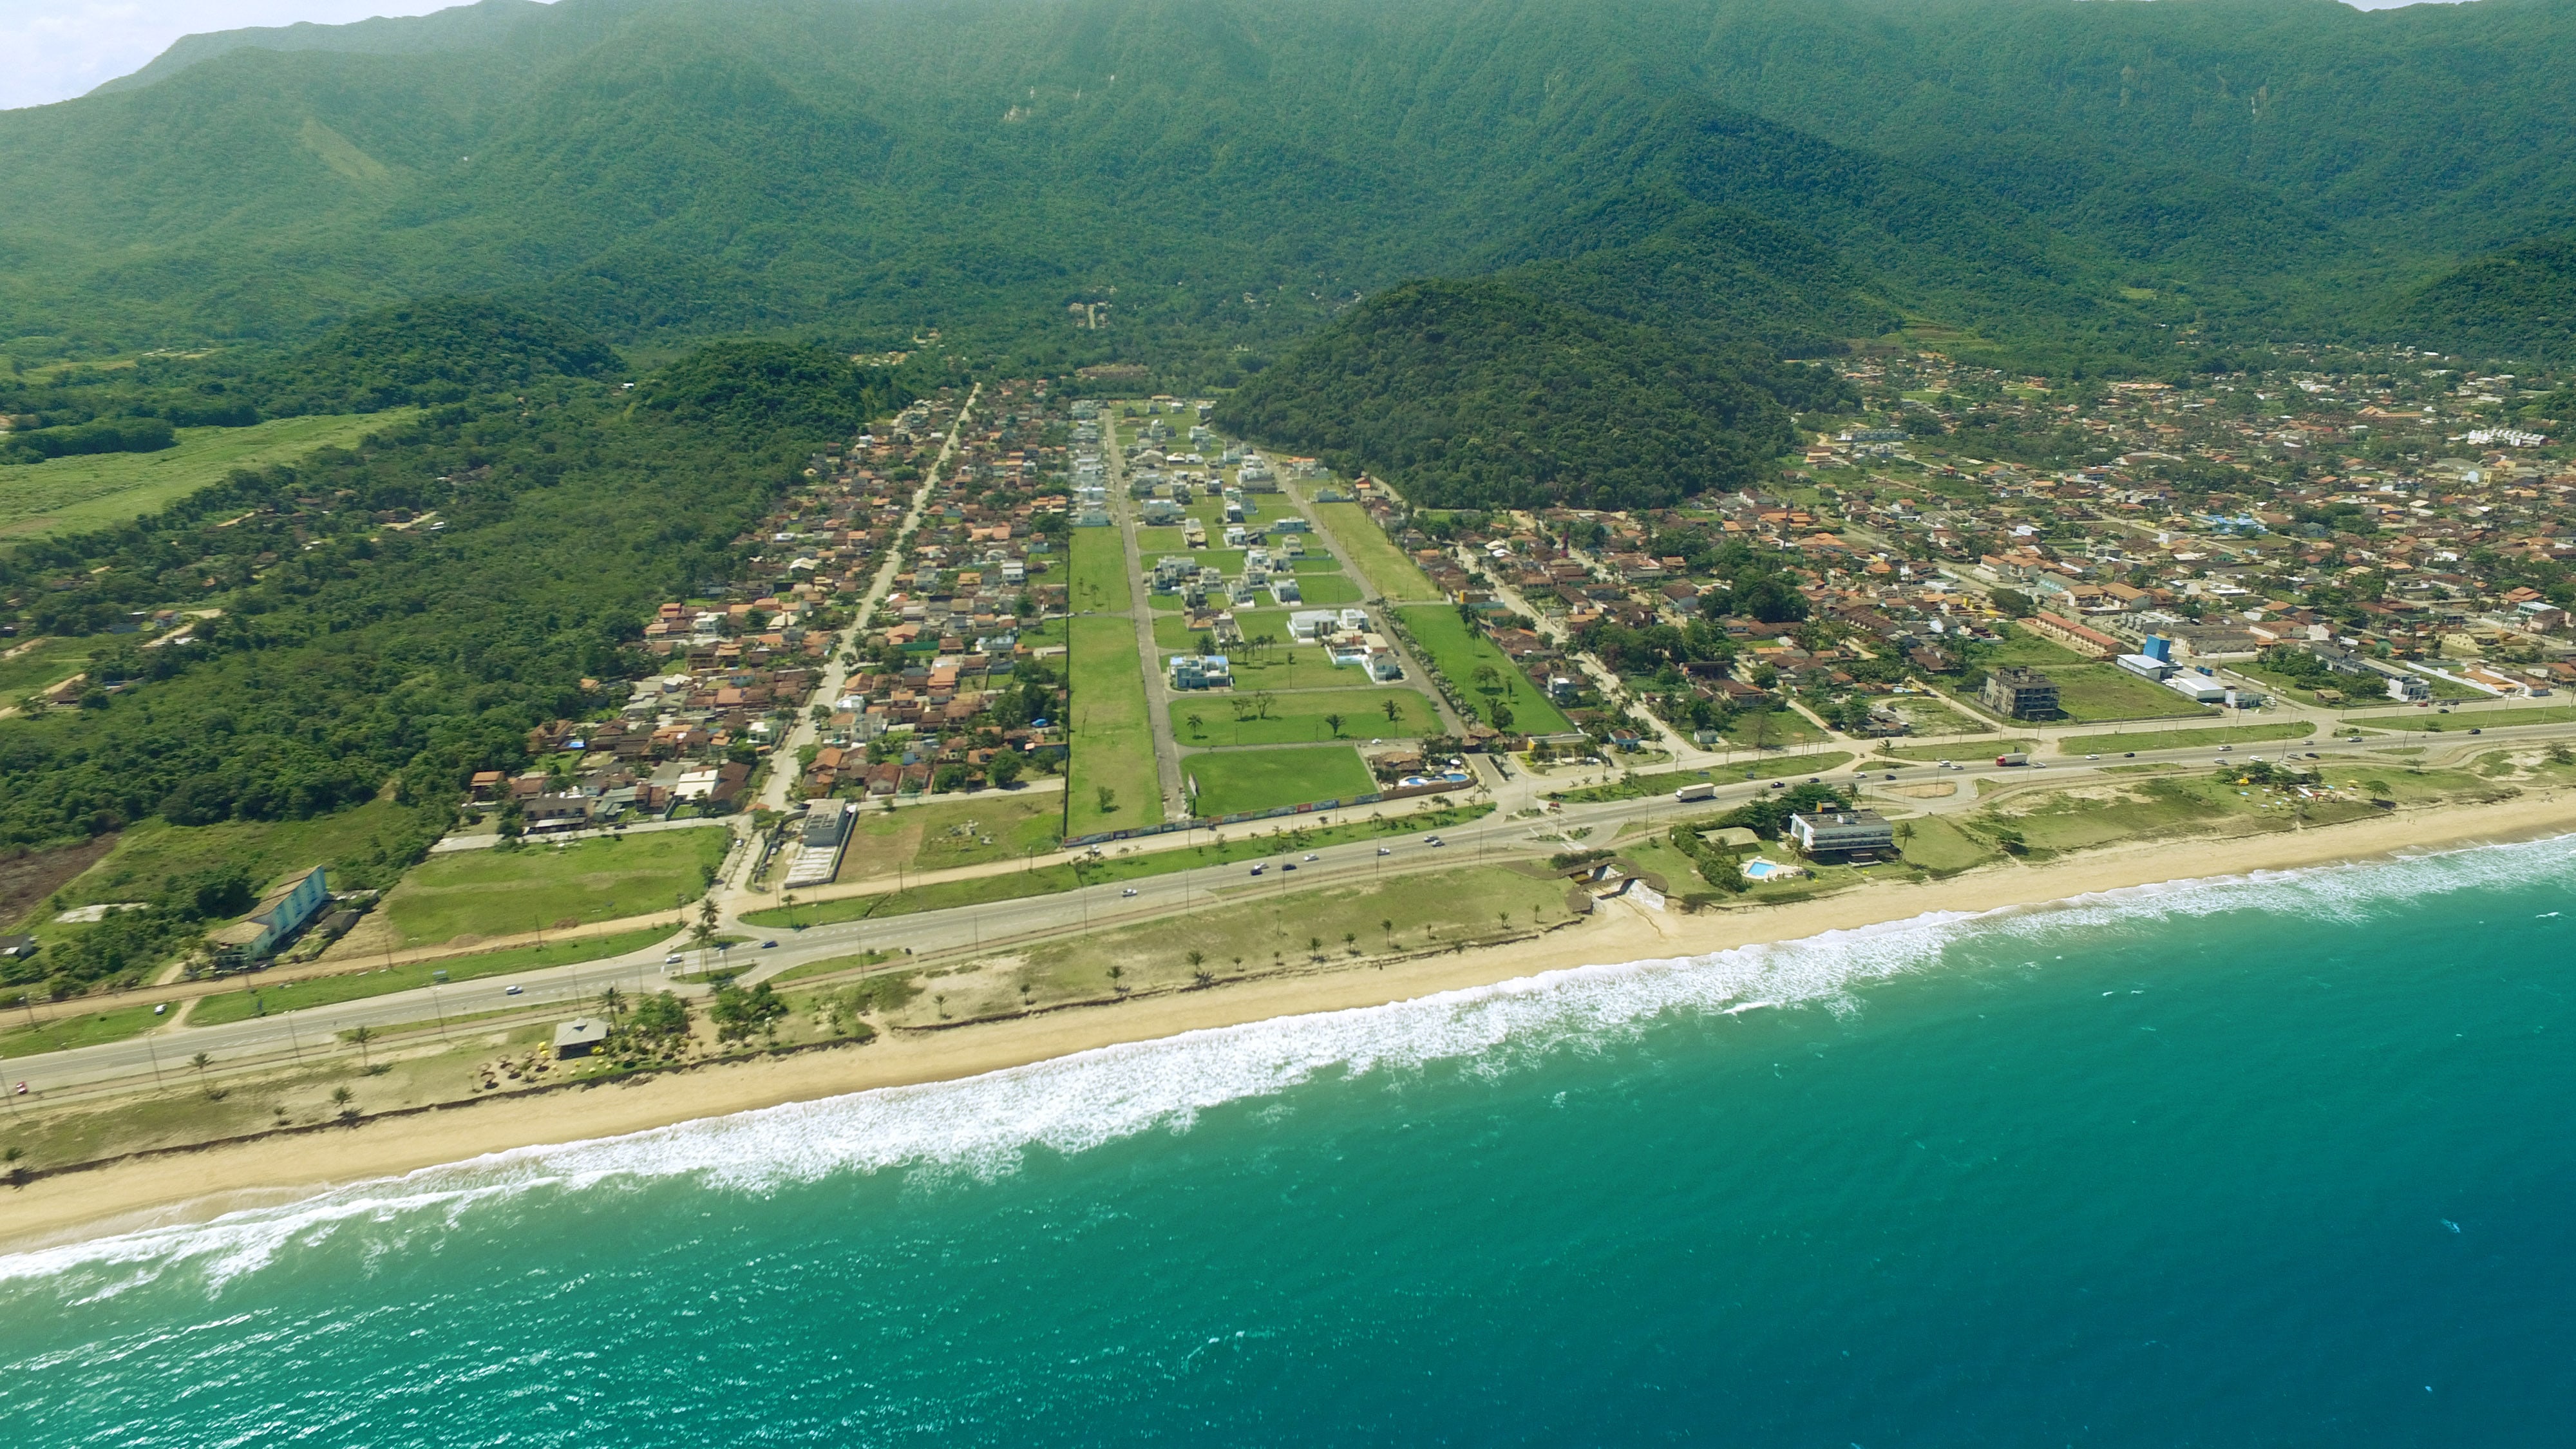 Imagem da costa da praia Massaguaçu em frente ao loteamento residencial Costa Nova